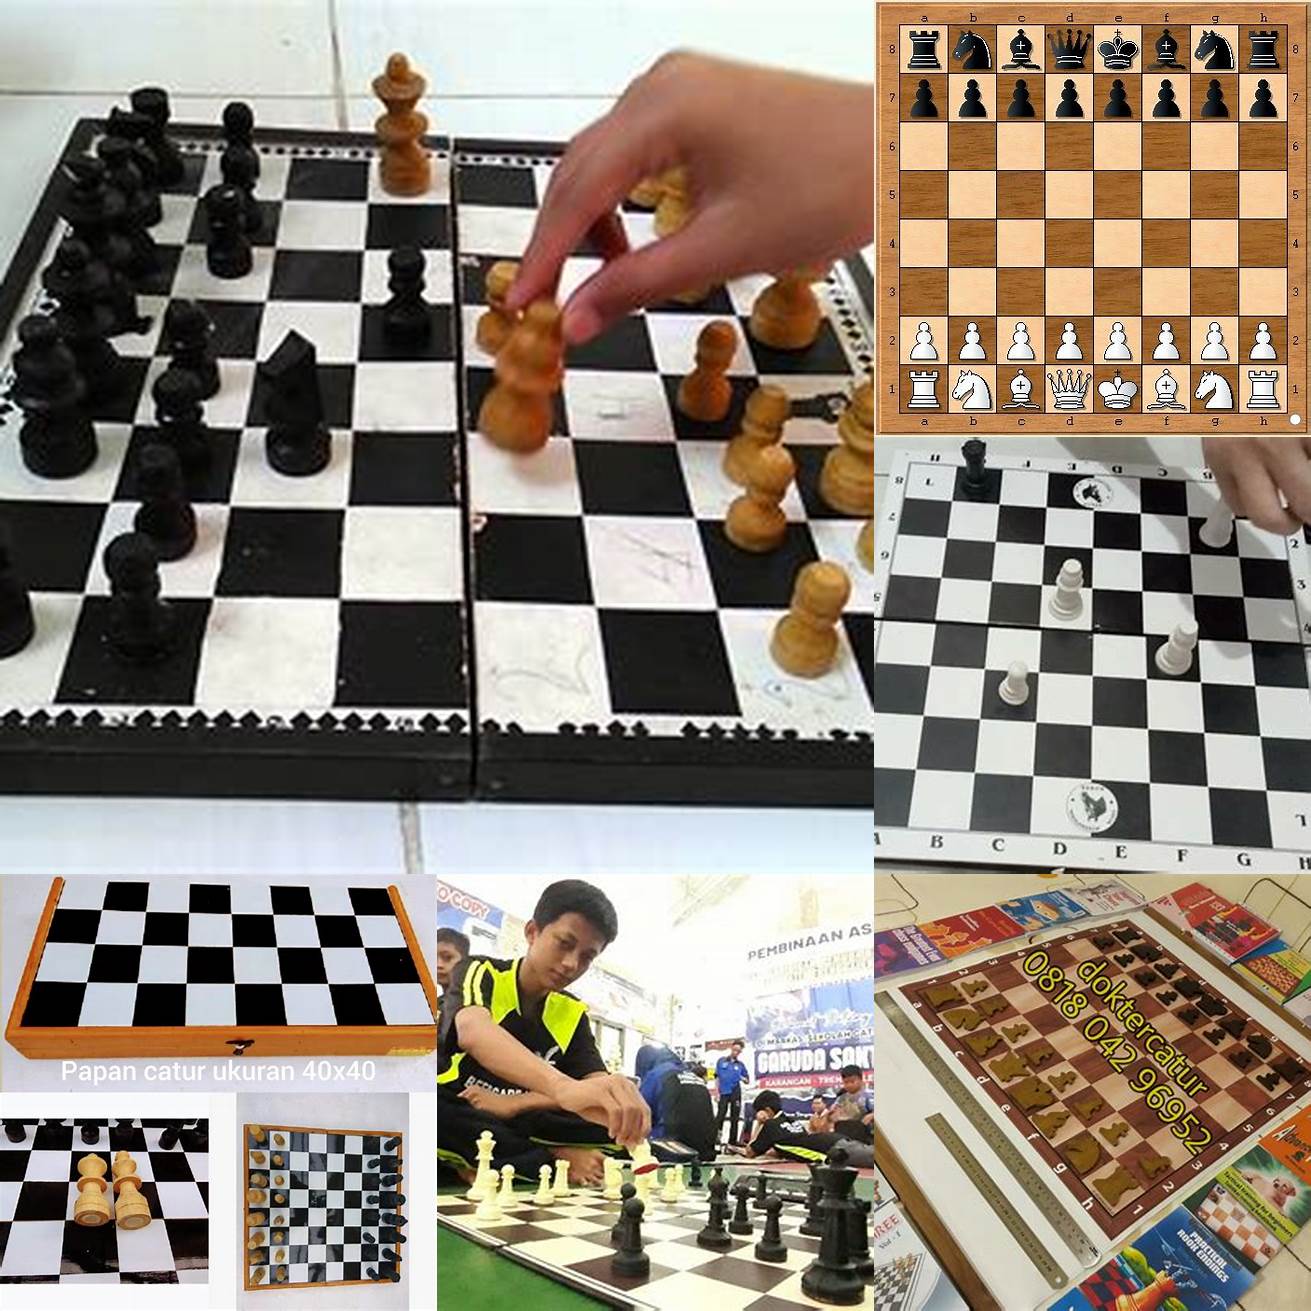 Pertama kendalikan tengah papan catur